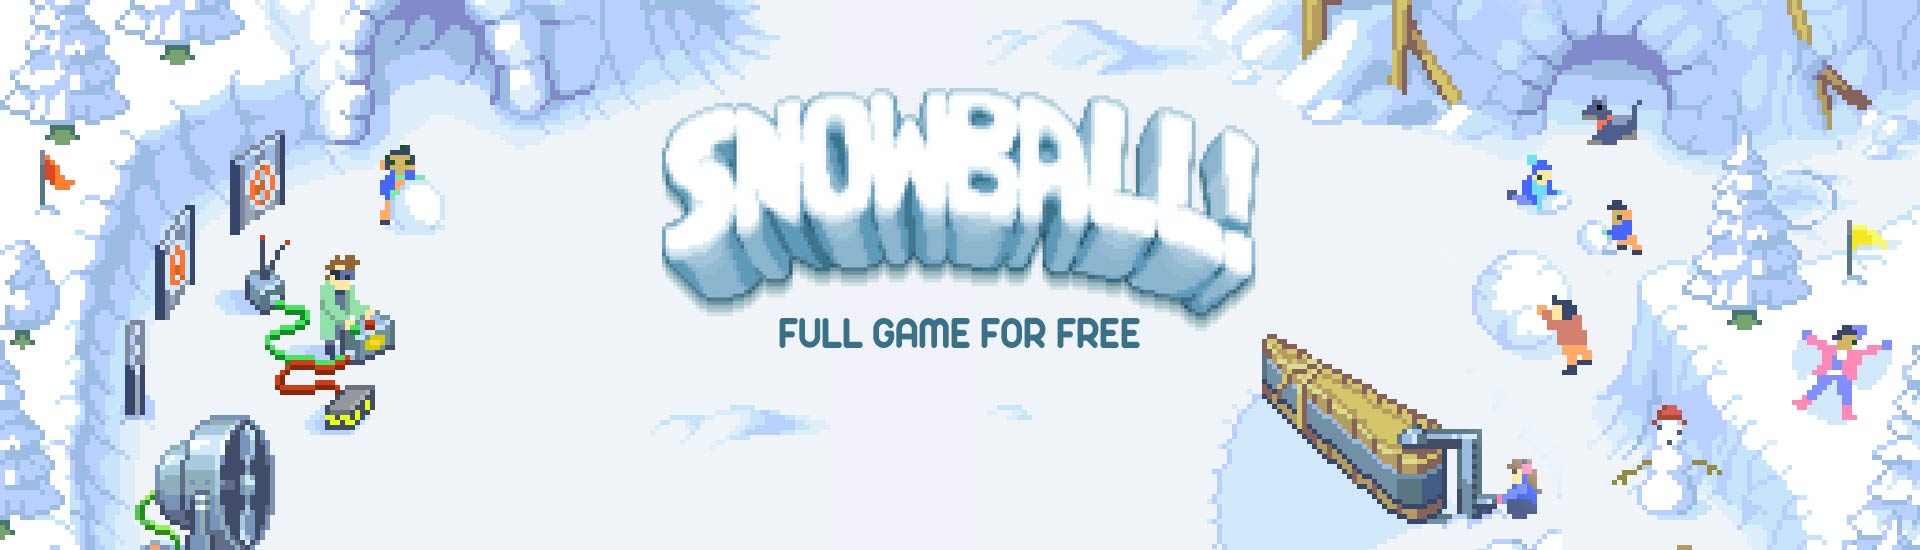 Бесплатные игра снежок